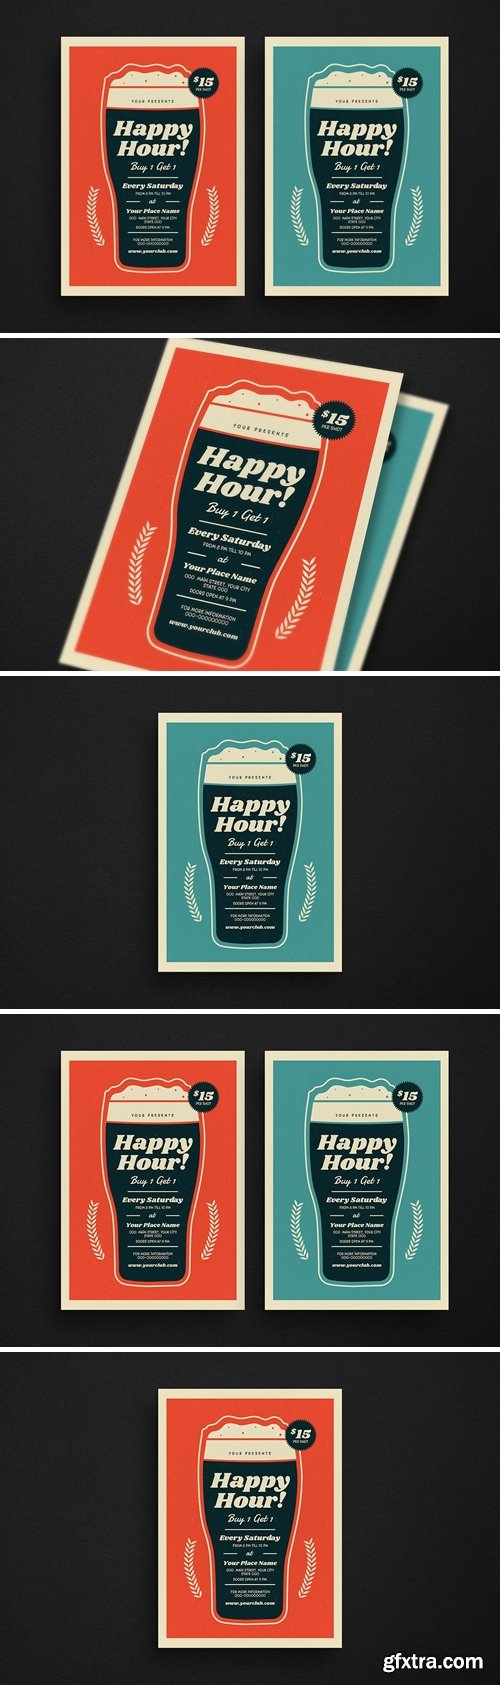 Retro Beer Happy Hour Event Flyer